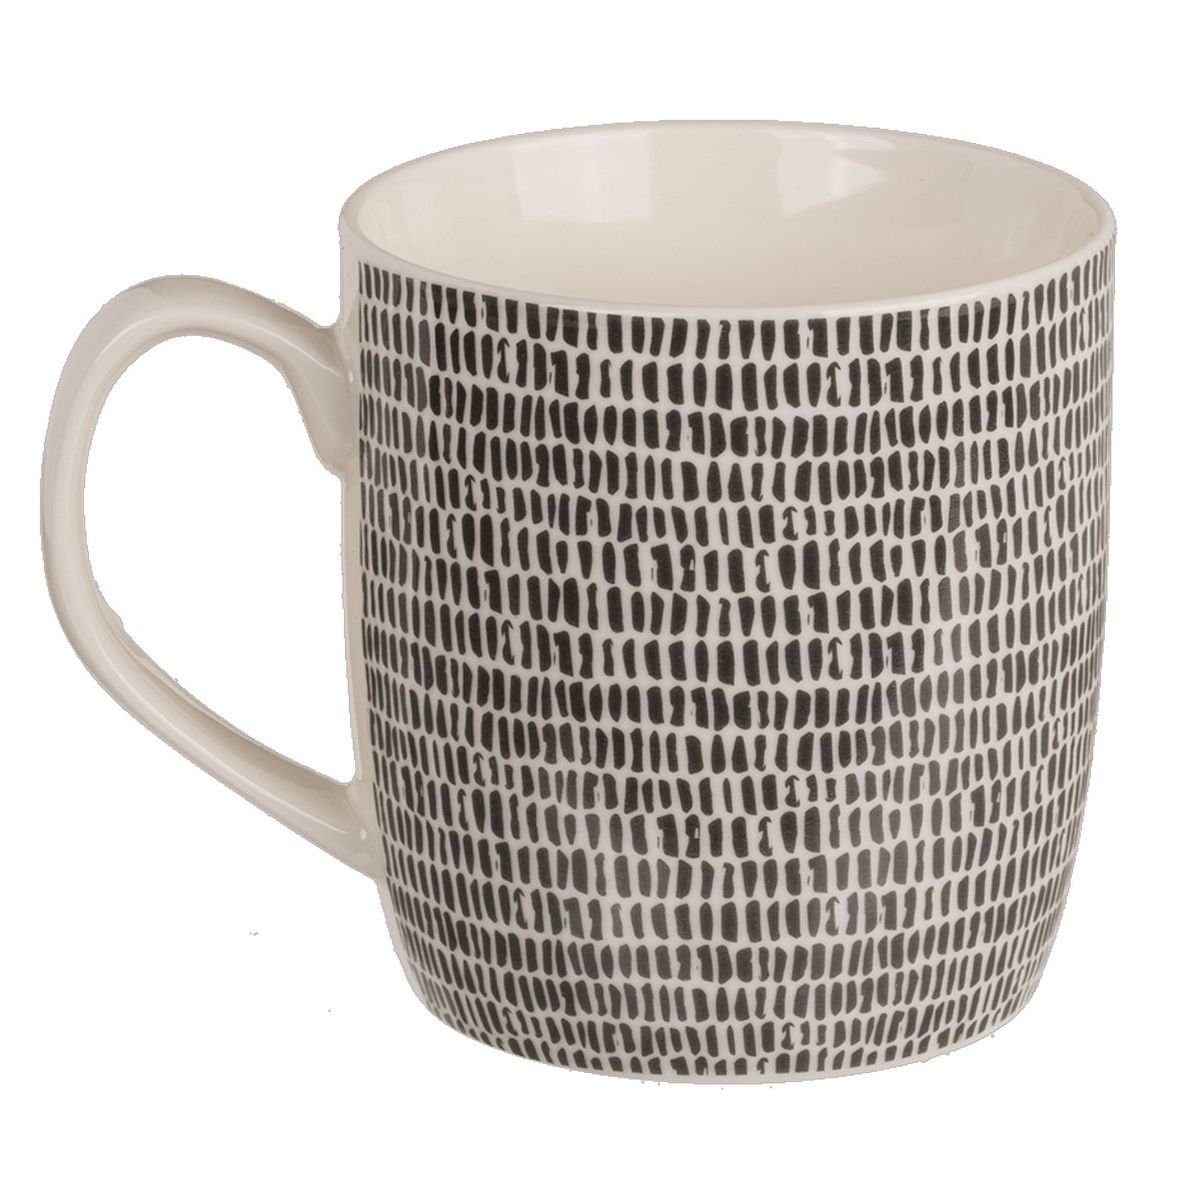 Marabellas Shop Tasse Kaffeetasse ca. 8,6 x 9,2cm in Schwarz/Weiß mit Herz- oder Strichmotiv, New Bone China, für Spülmaschinen geeignet